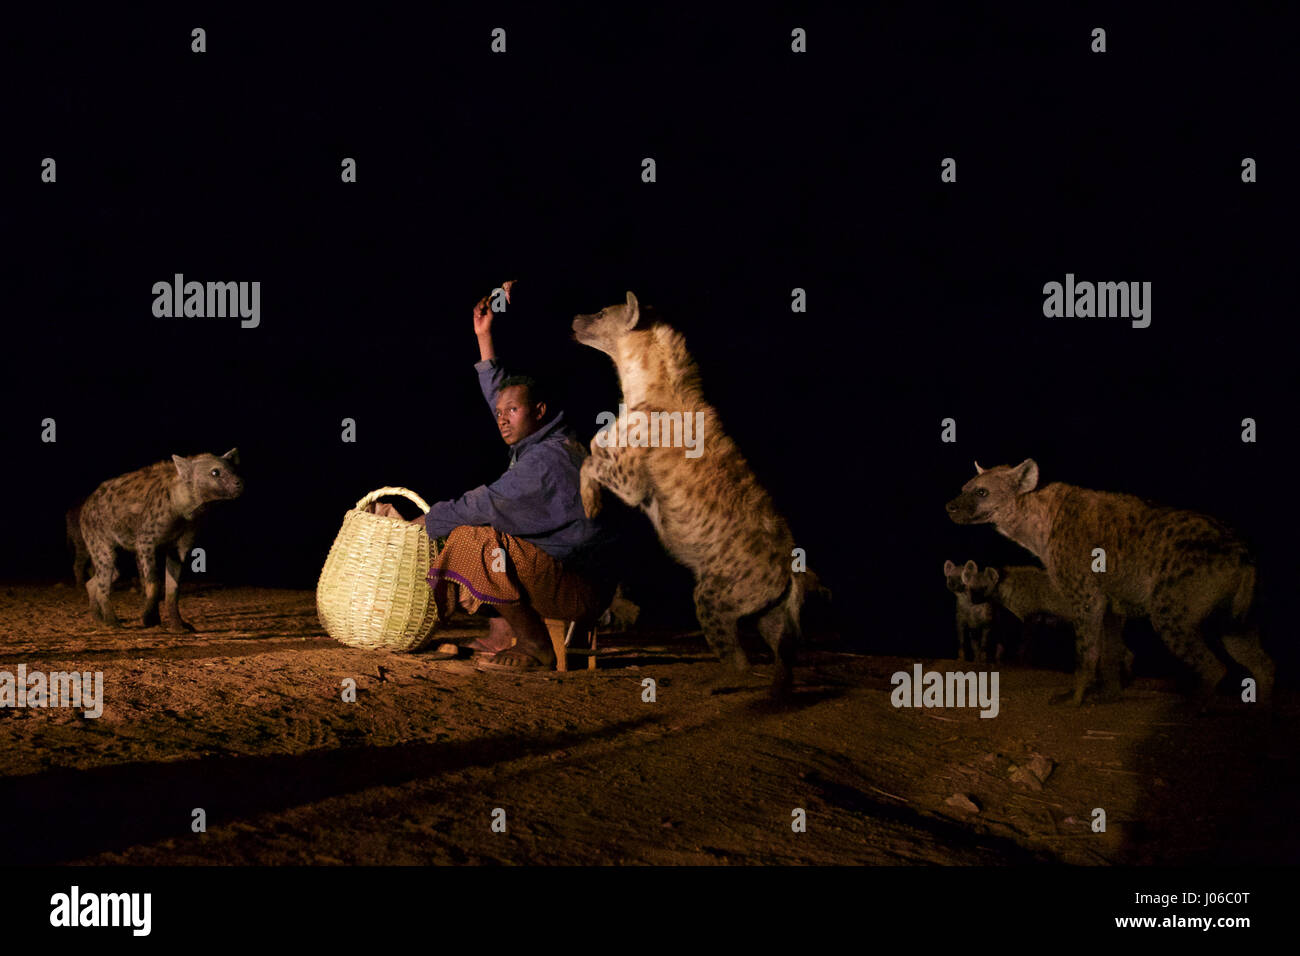 HARAR, Äthiopien: Neue 'Hyäne Man' Abbas Saleh Fütterung einer Hyäne.  Treffen Sie die unglaubliche Hyäne Mann von Harar, die nun seinen Titel auf seinen Sohn nach dreißig Jahren, am besten mit Freunden einen Clan dieser fleischfressende Tiere vorbei ist. Bilder zeigen einen jungen Erben die Hyäne Mann Titel nach der jahrhundertealten Tradition seines Volkes vor möglichen Angriffen durch Hyänen ruhig füttern diese wilden Radikalfänger schützen. Er ist völlig frei von jeglicher Art von Angst Sie assoziieren würde, wobei dies in der Nähe Afrikas produktivsten Fleischfresser.  Hyänen sind dafür bekannt, angreifen und töten Menschen, sondern wie die Stockfoto